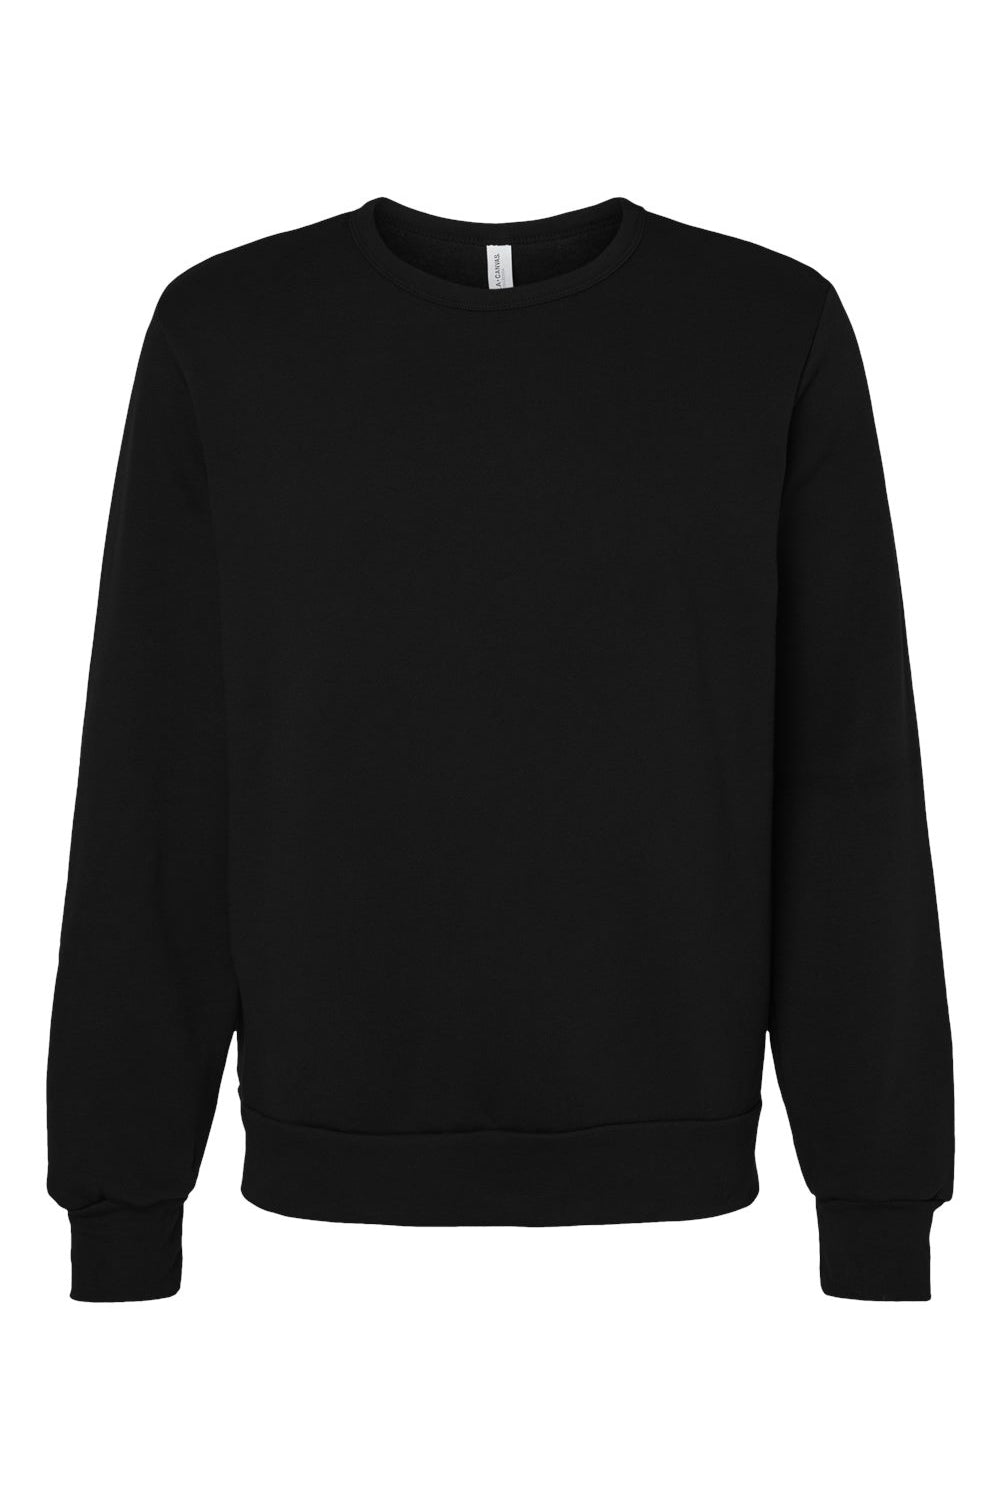 Bella + Canvas 3911 Mens Classic Crewneck Sweatshirt Black Flat Front